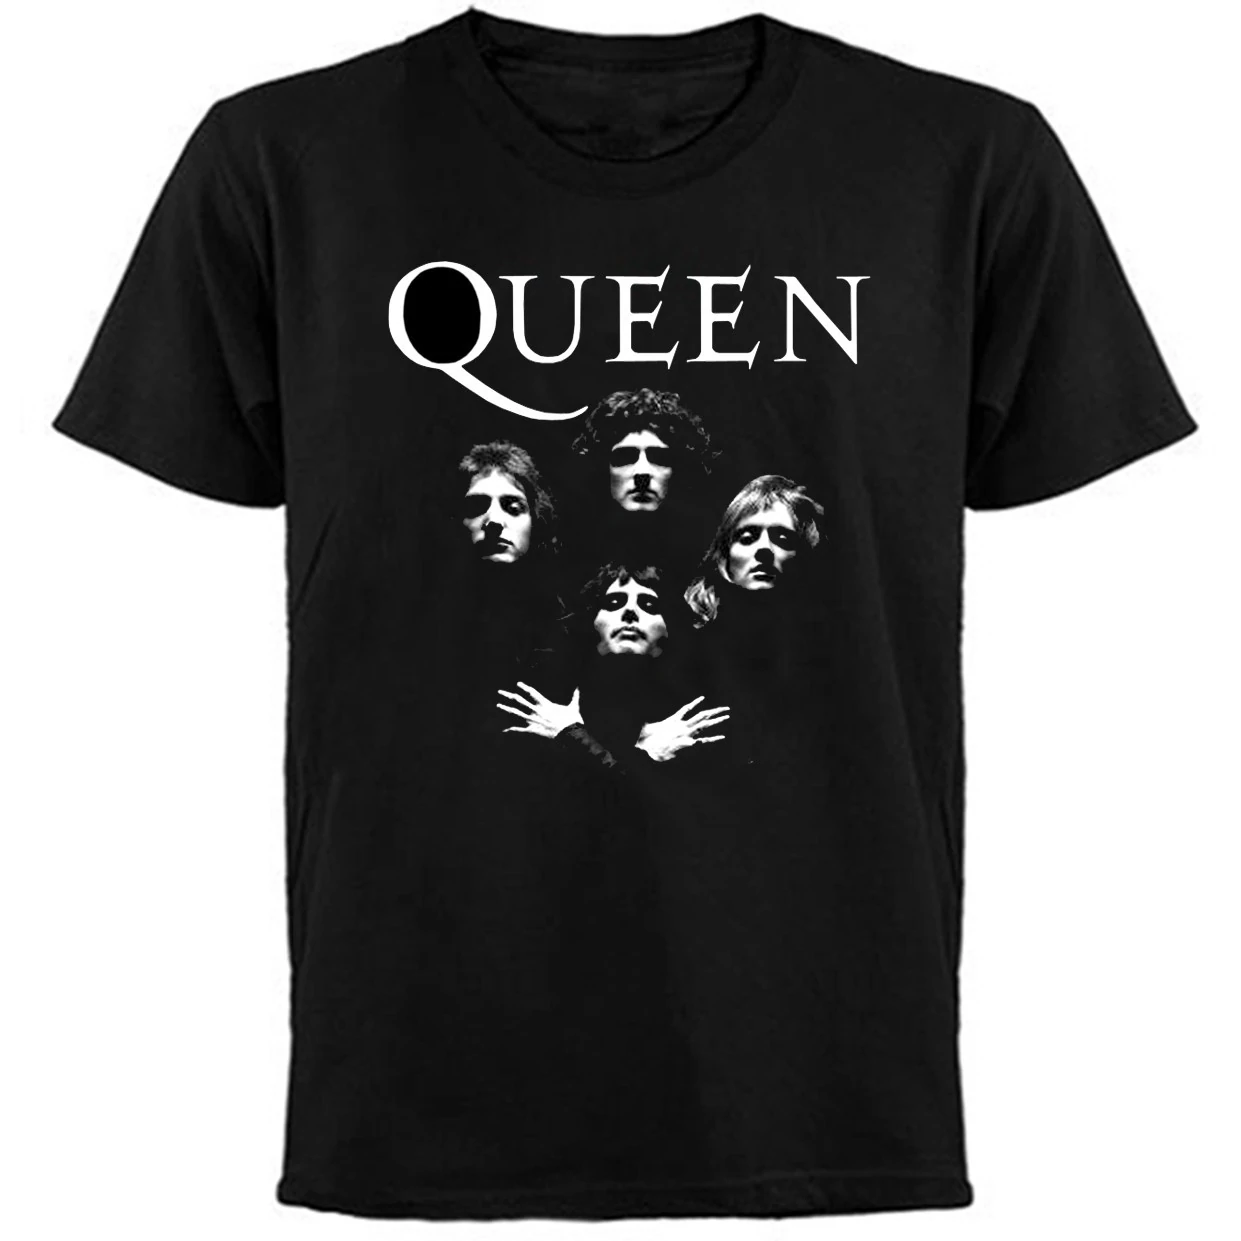 QUEEN - Bohemian Rhapsody - T-Shirt